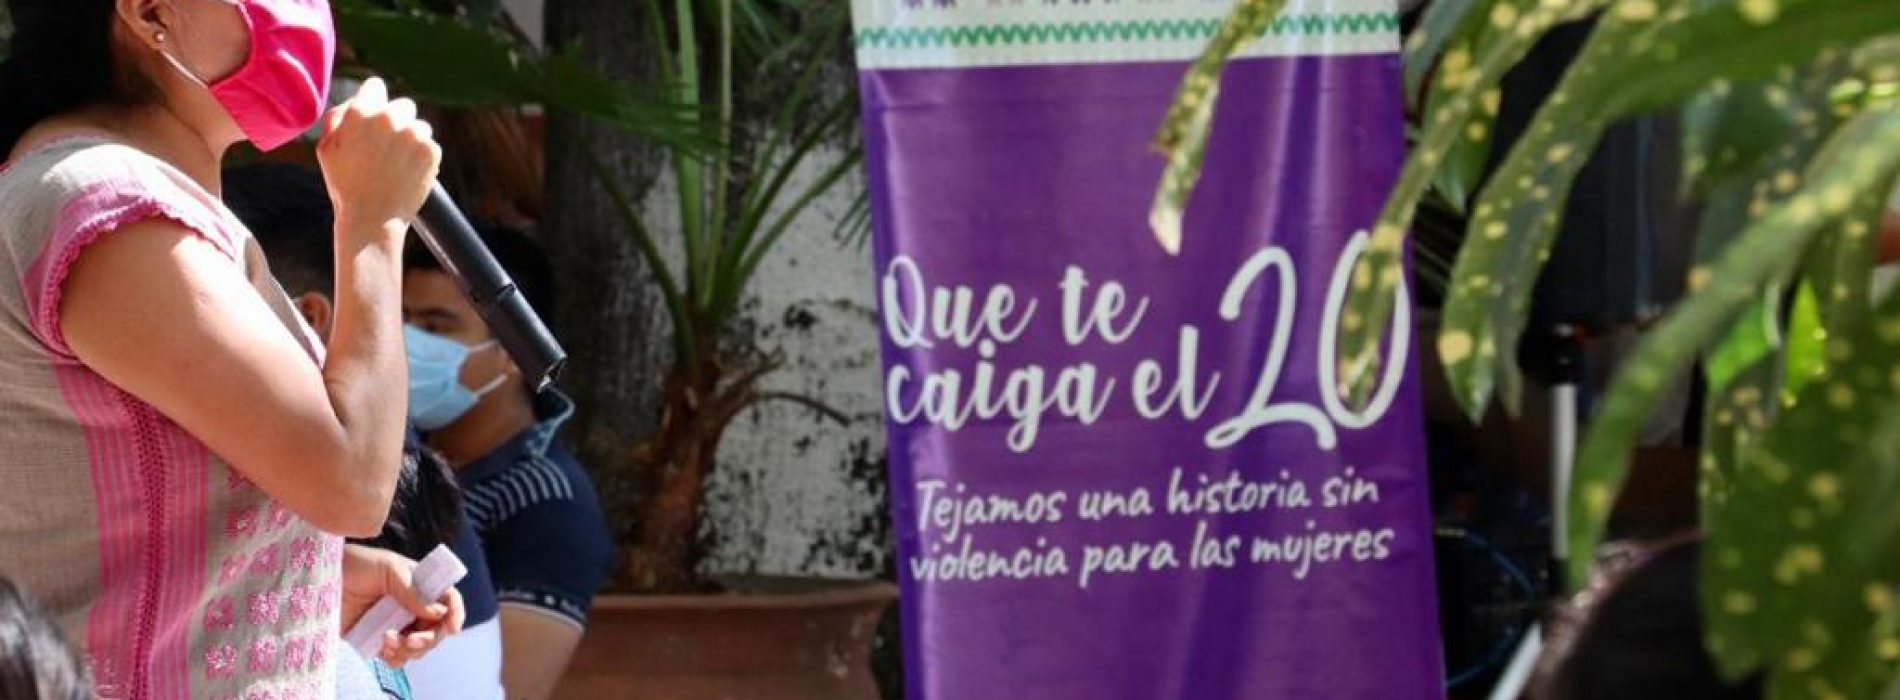 La atención a ras de tierra, permite construir un mejor Oaxaca: Sepia